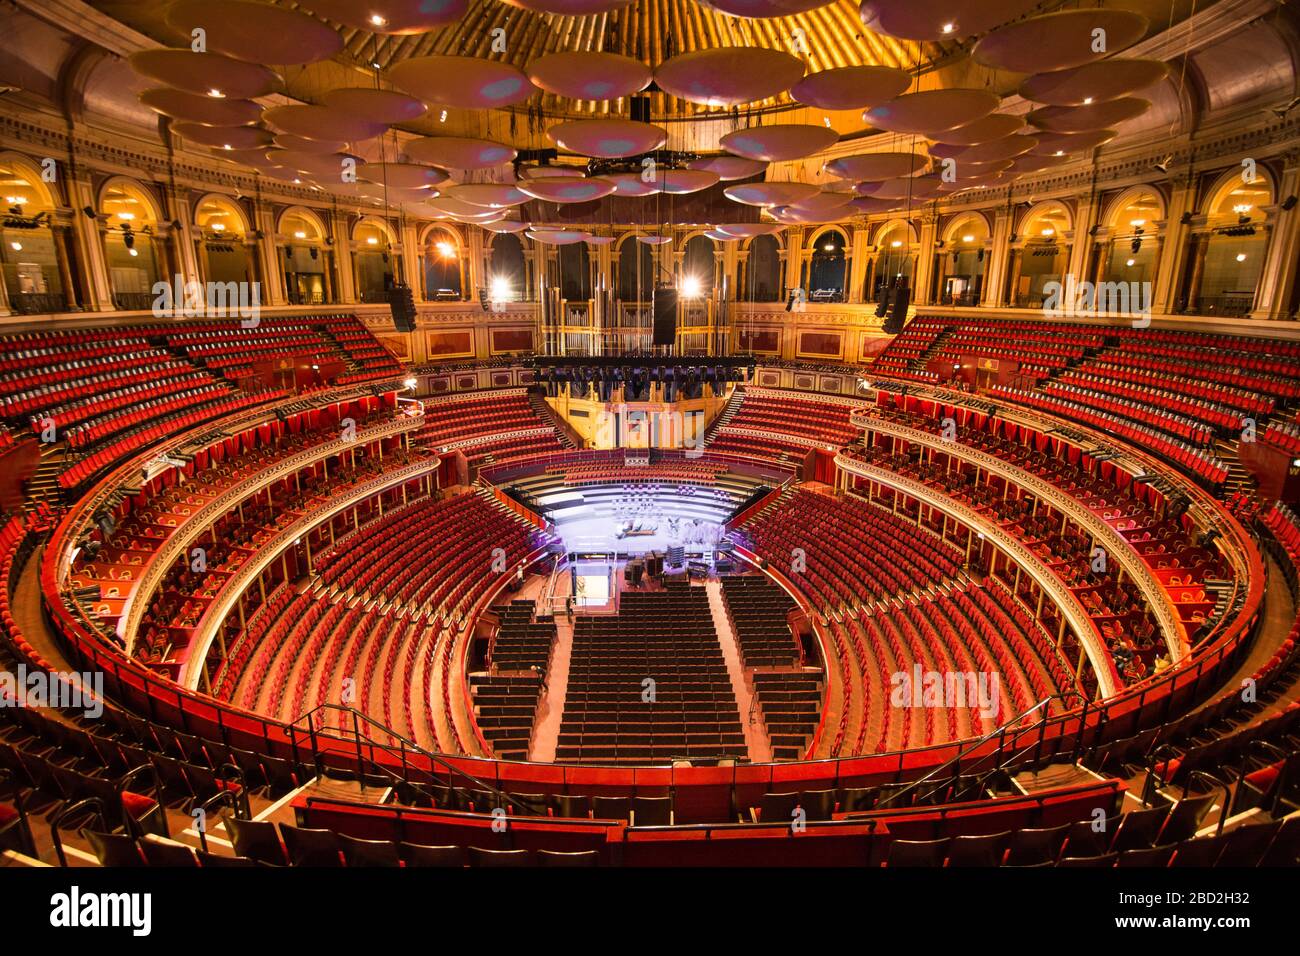 Intérieur du Royal Albert Hall sans personne Banque D'Images